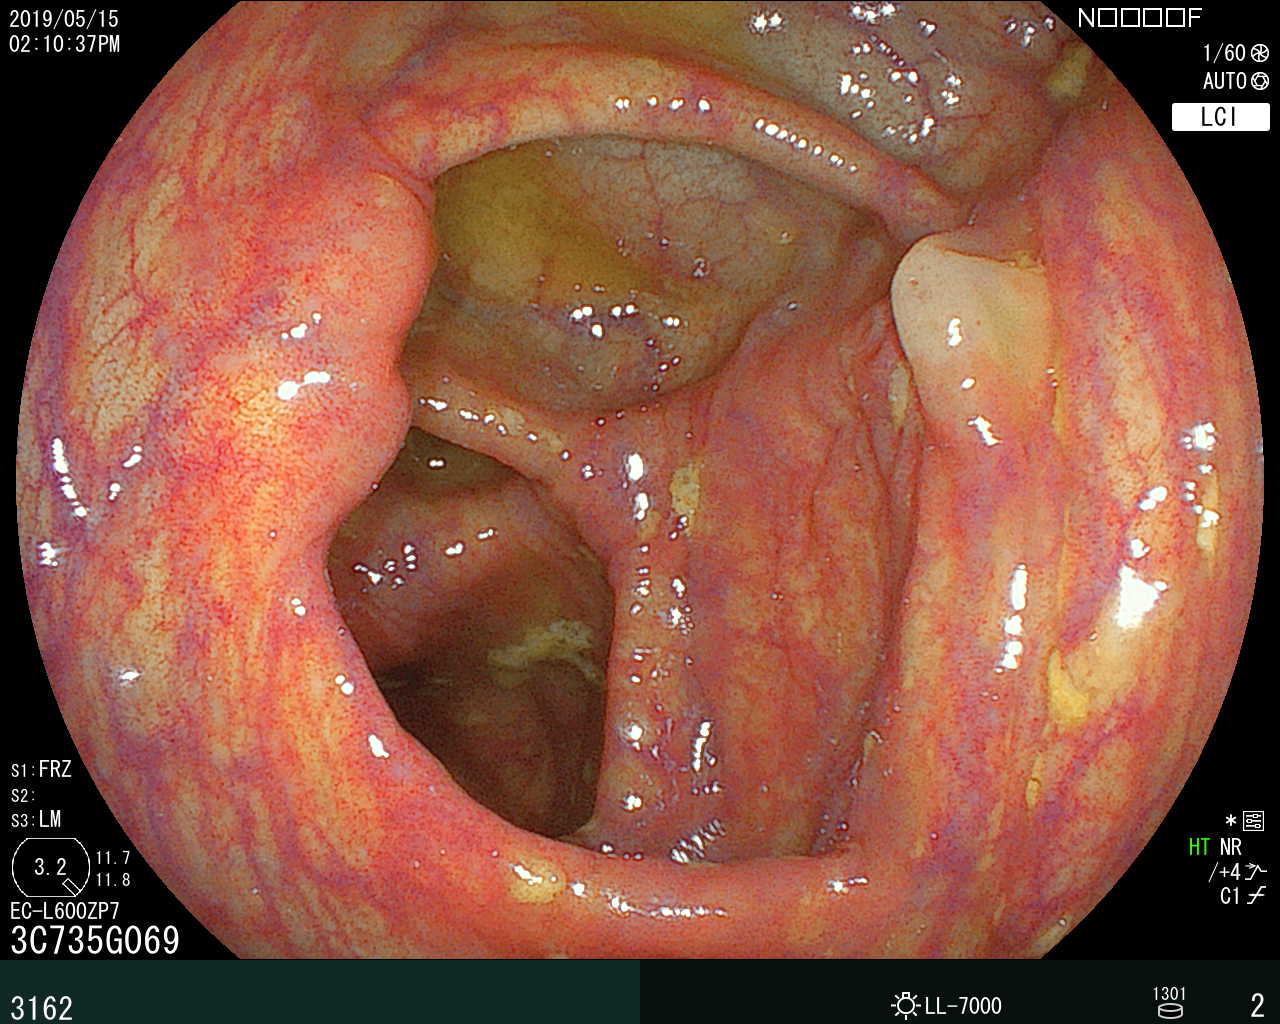 大腸内視鏡検査で確認された盲腸の部分